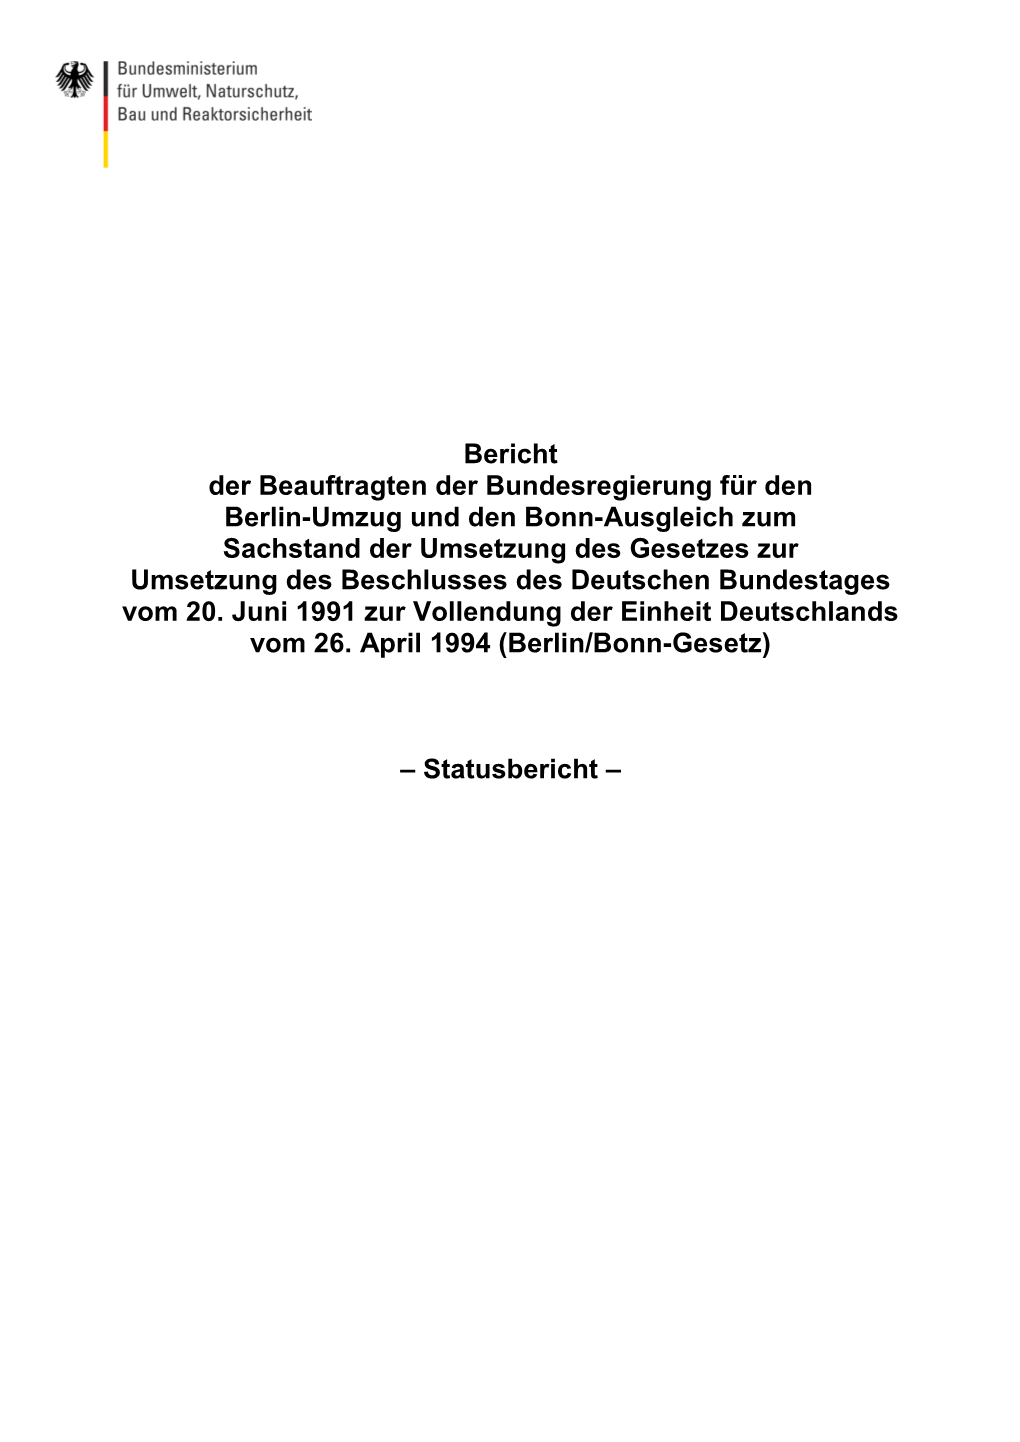 Bericht Der Beauftragten Der Bundesregierung Für Den Berlin